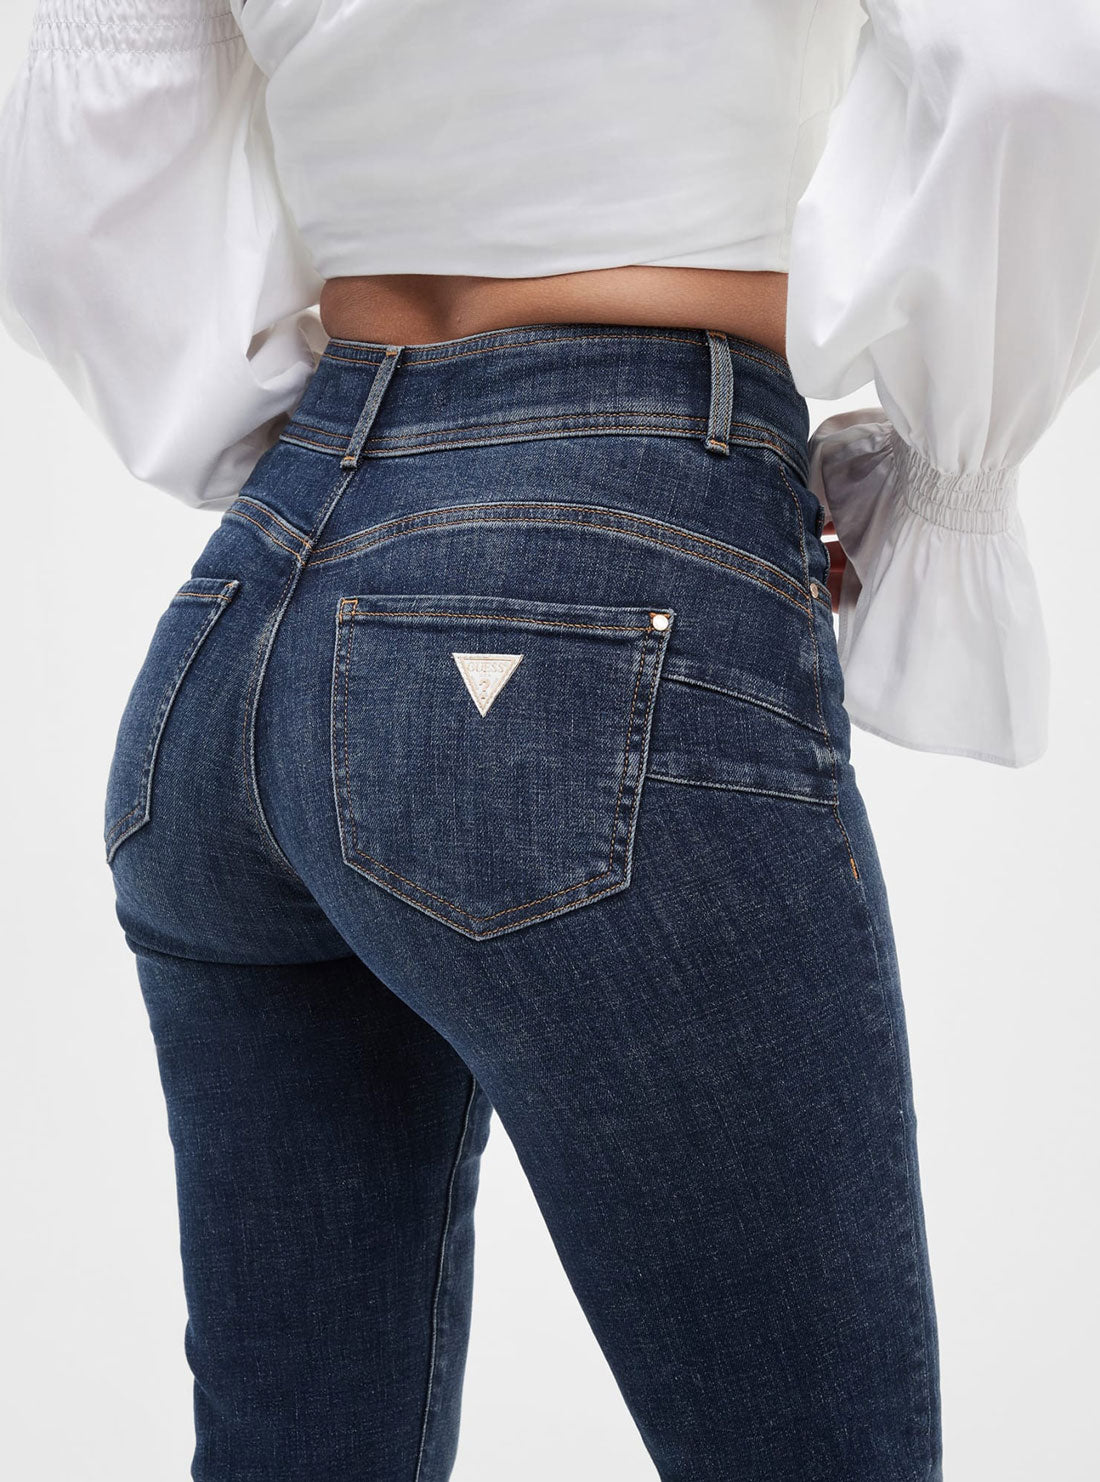 Eco Blue Shape Up Denim Jeans | GUESS Women's Apparel | detail view